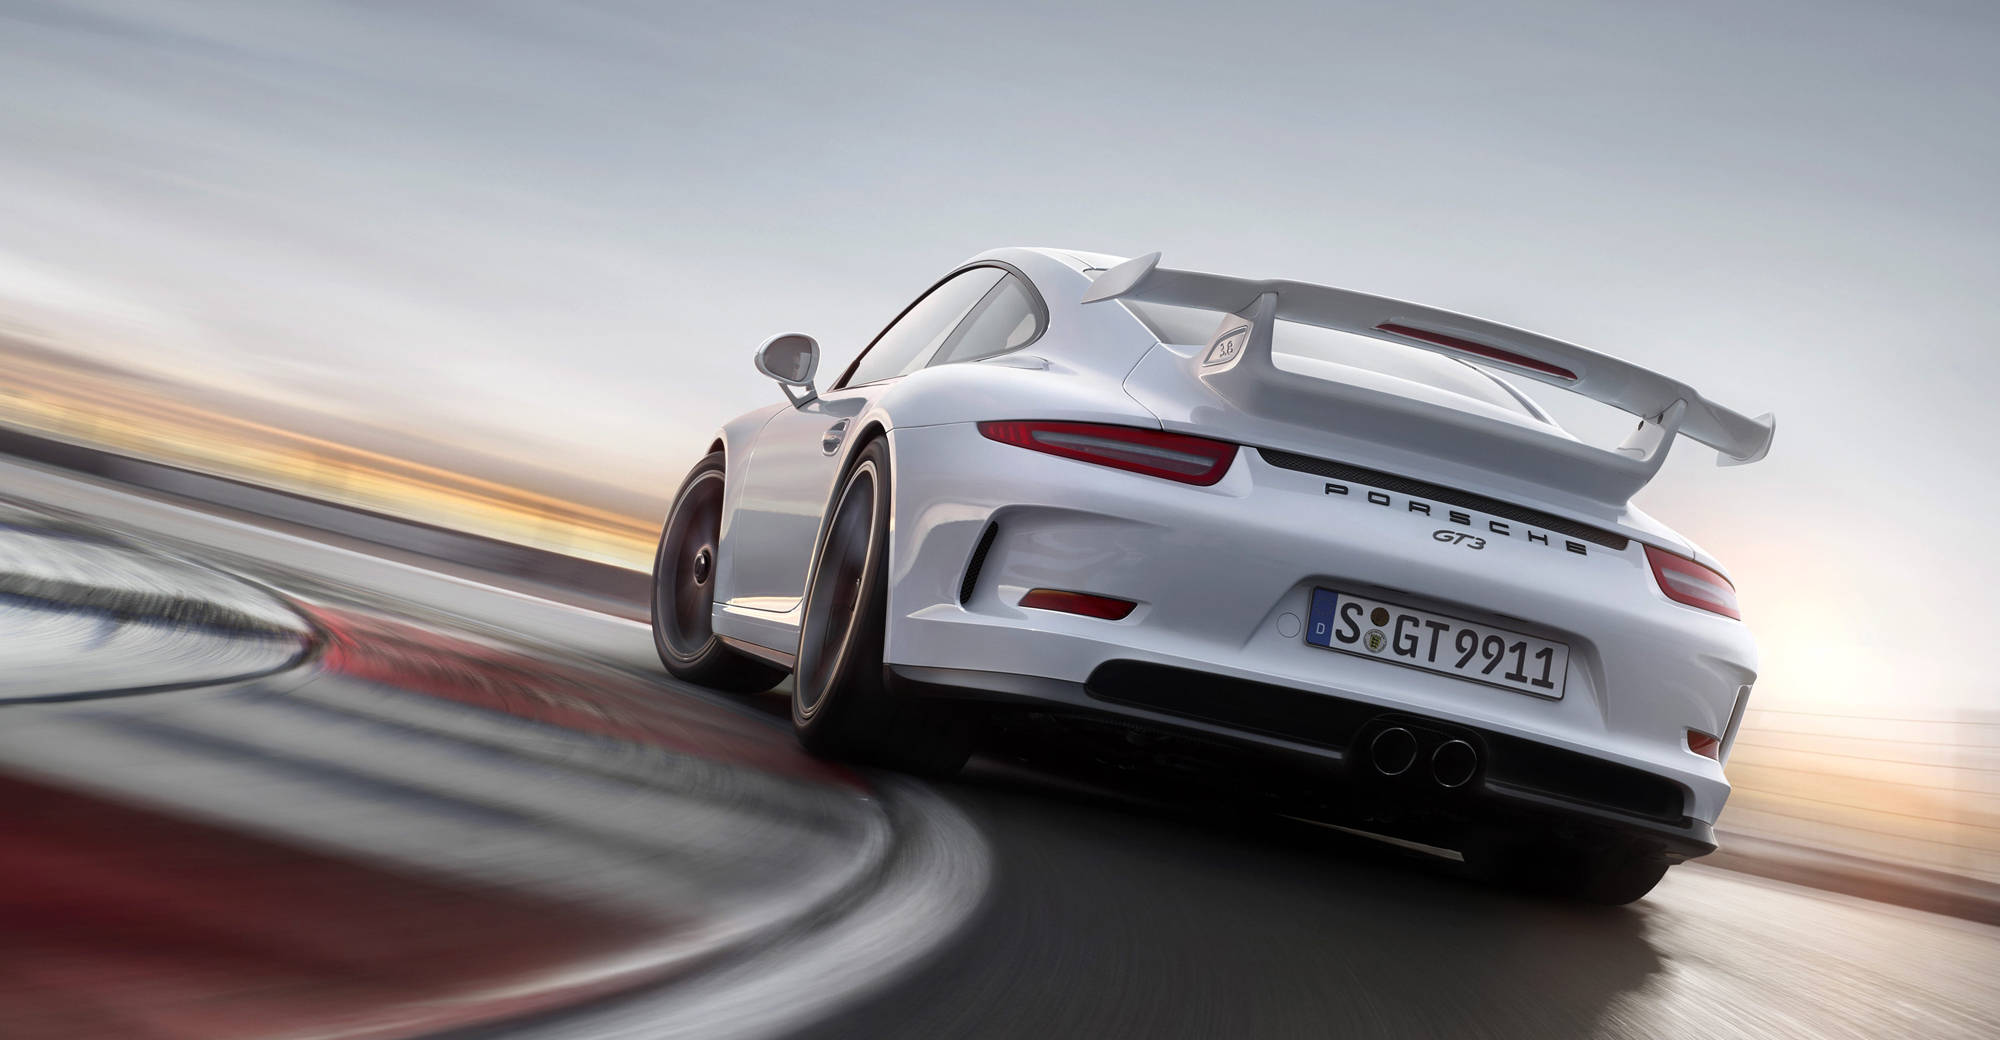  Porsche GT3 Wallpaper HD